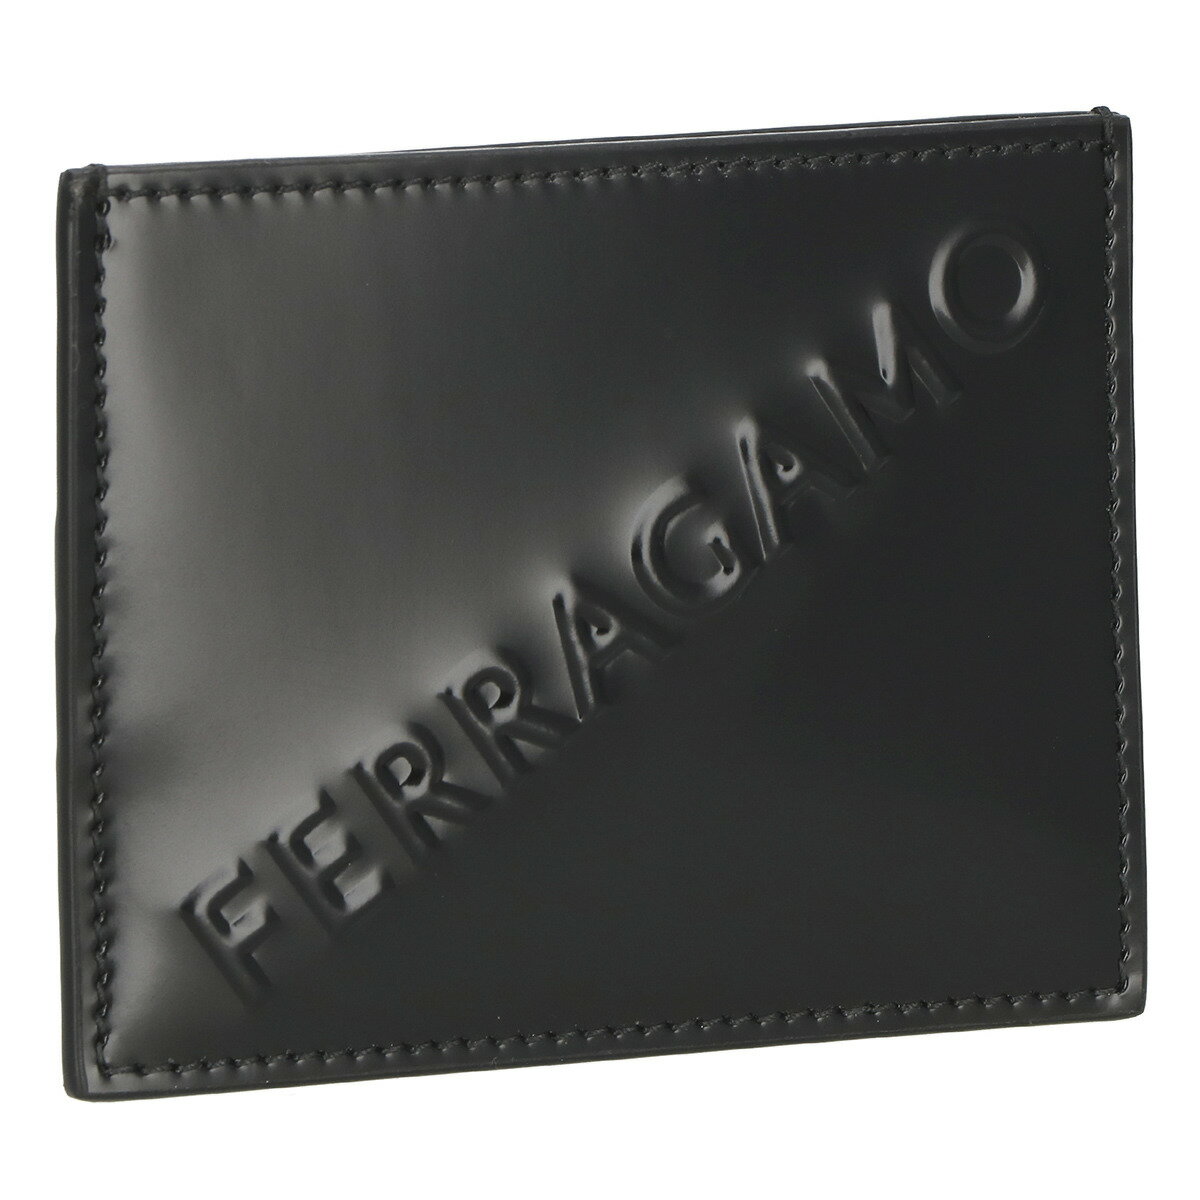 フェラガモ Ferragamo カードケース 名刺入れ 661204 764207 メンズ ブラック 本革 レザー